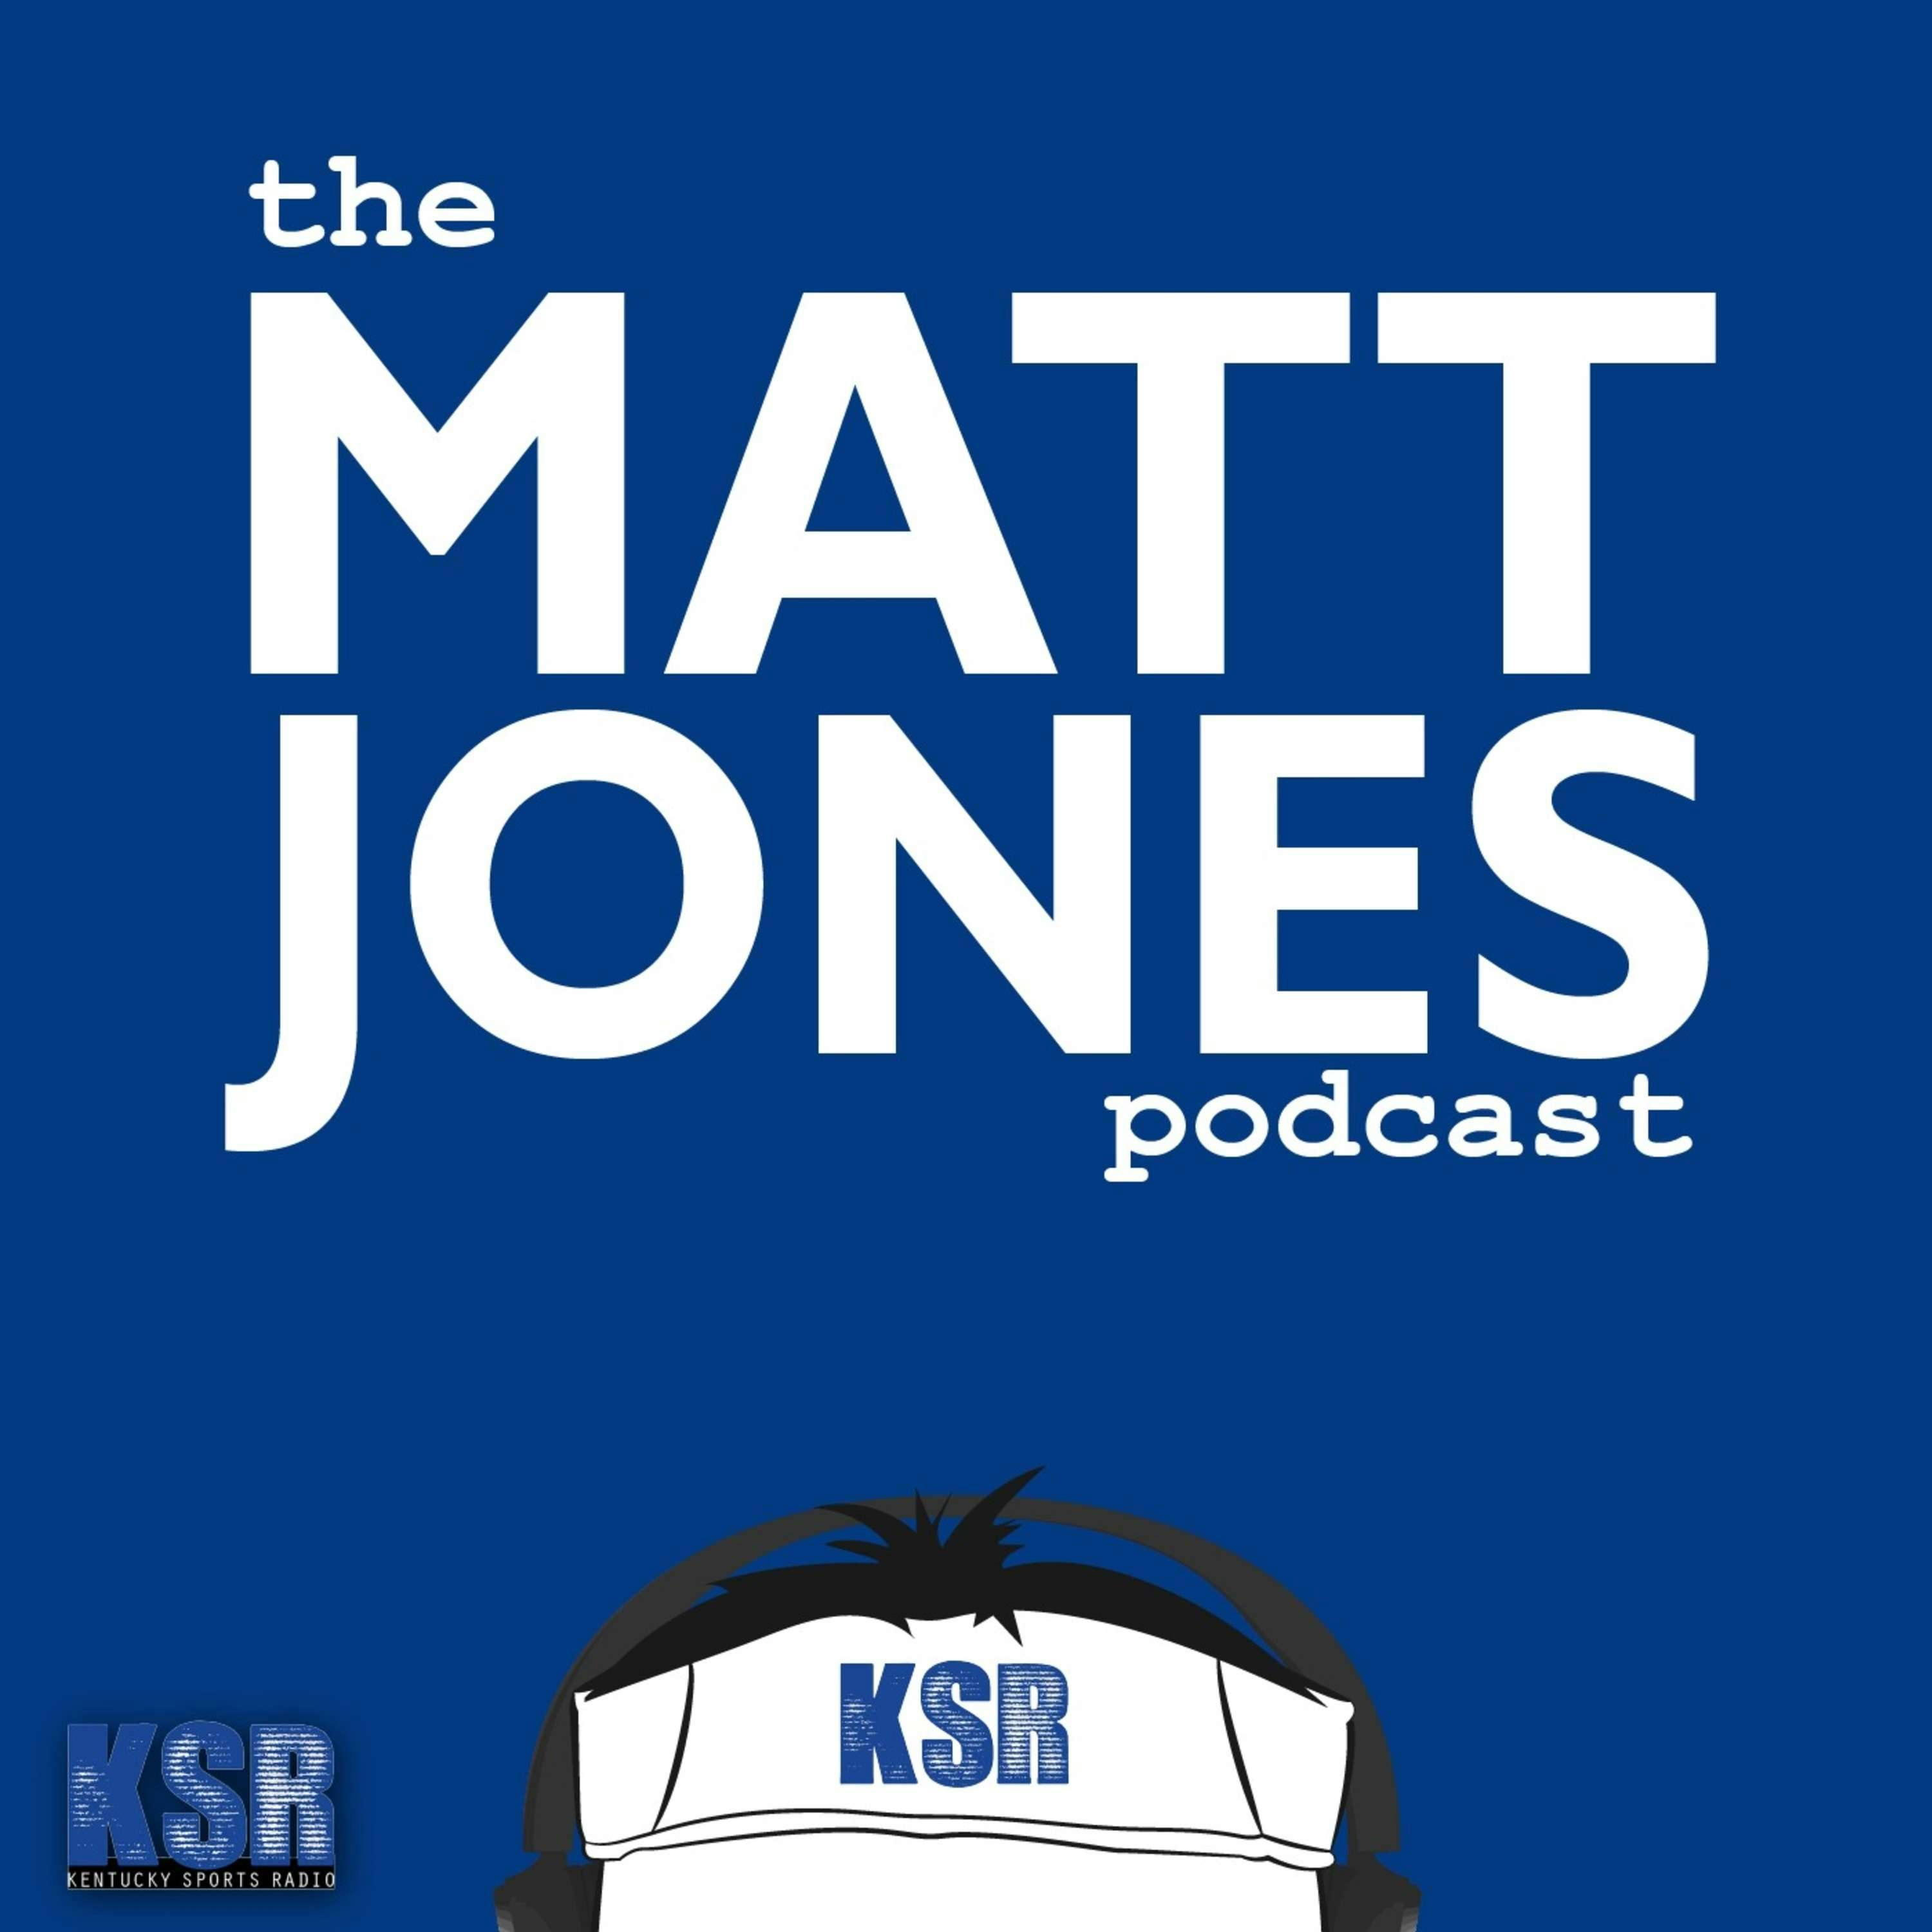 The Matt Jones Podcast: E48 Michael Waltrip & Alex Kennedy